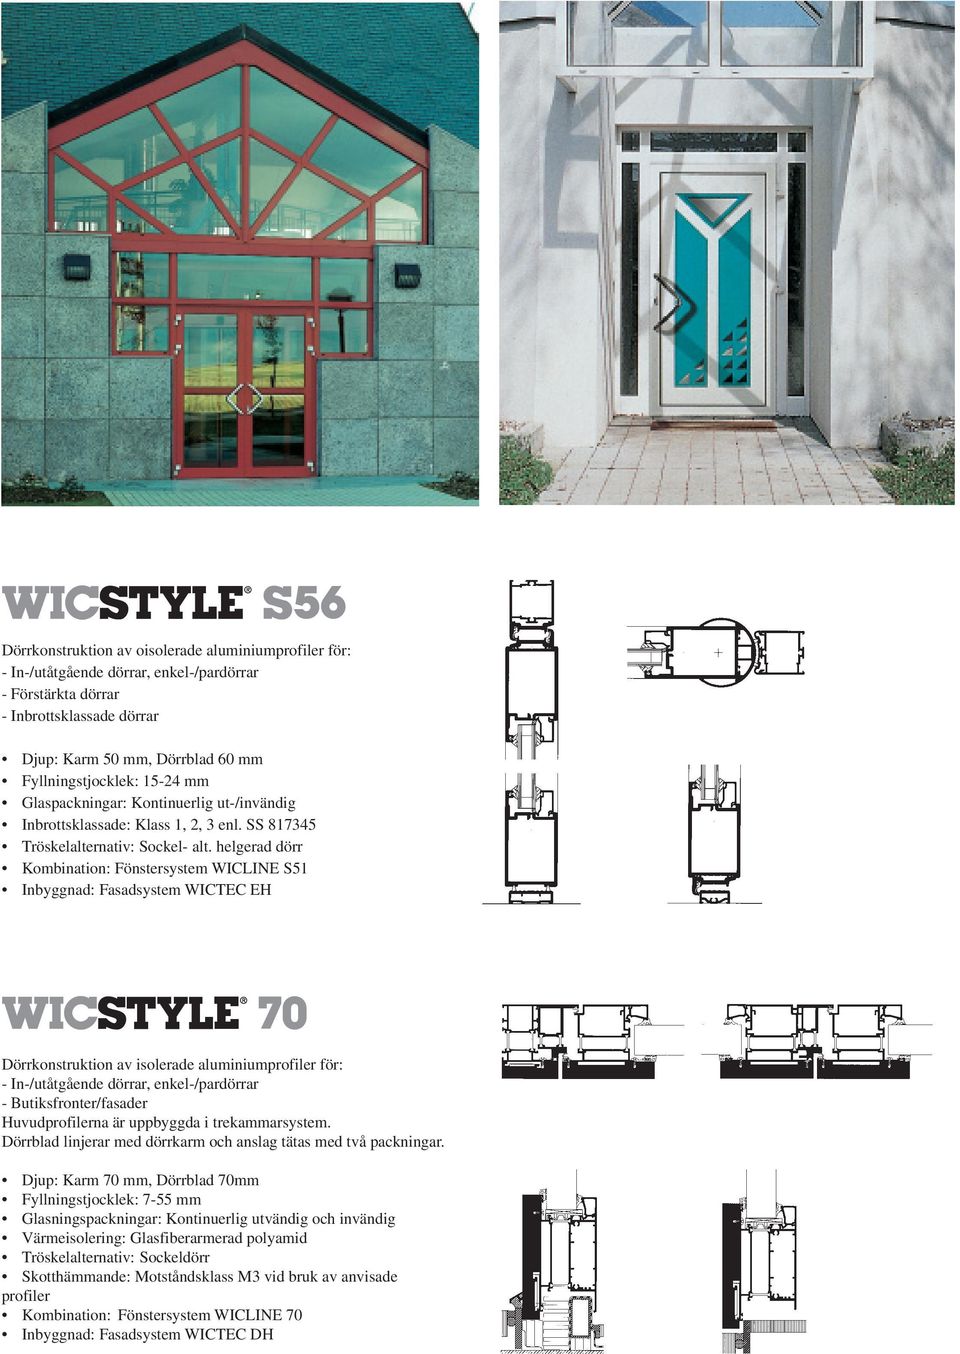 helgerad dörr Kombination: Fönstersystem WICLINE S51 Inbyggnad: Fasadsystem WICTEC EH Dörrkonstruktion av isolerade aluminiumprofiler för: - Butiksfronter/fasader Huvudprofilerna är uppbyggda i